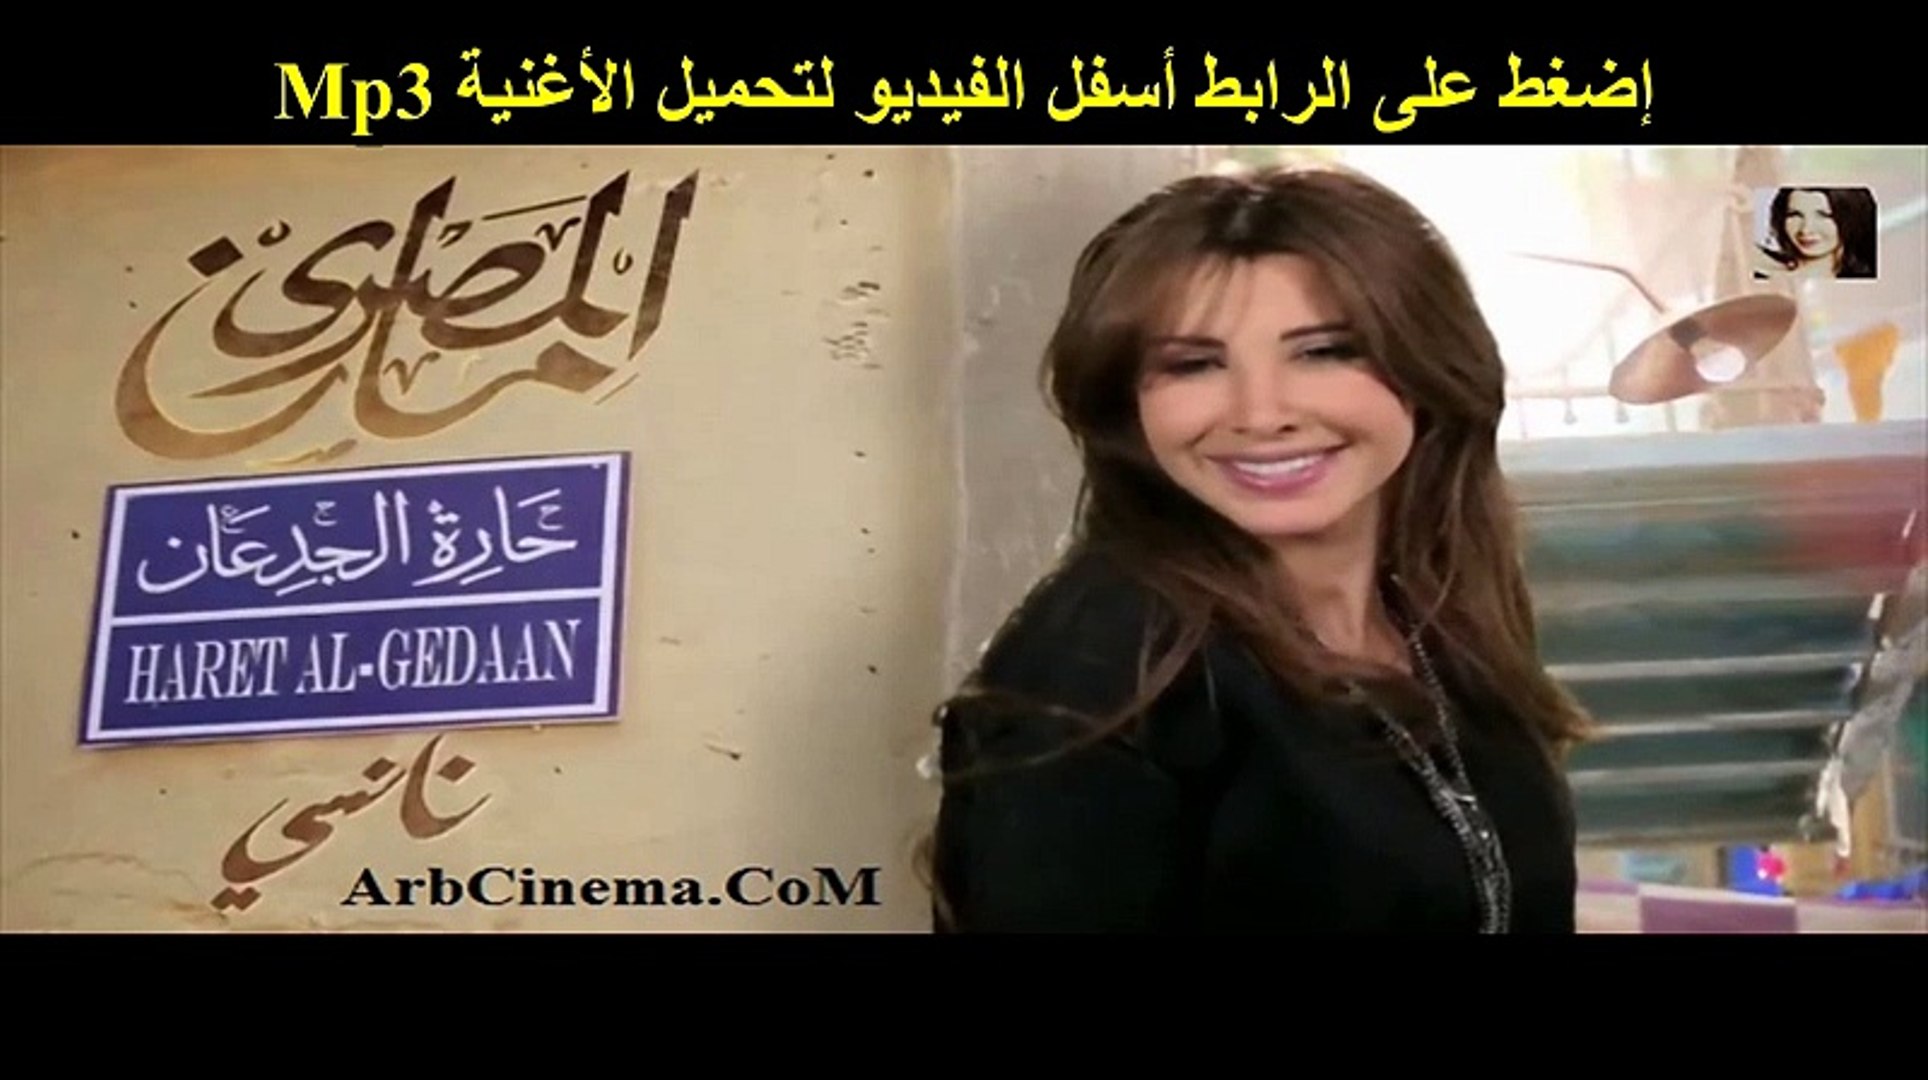 نانسي عجرم المصري مان - كاملة mp3 وإستماع - video Dailymotion